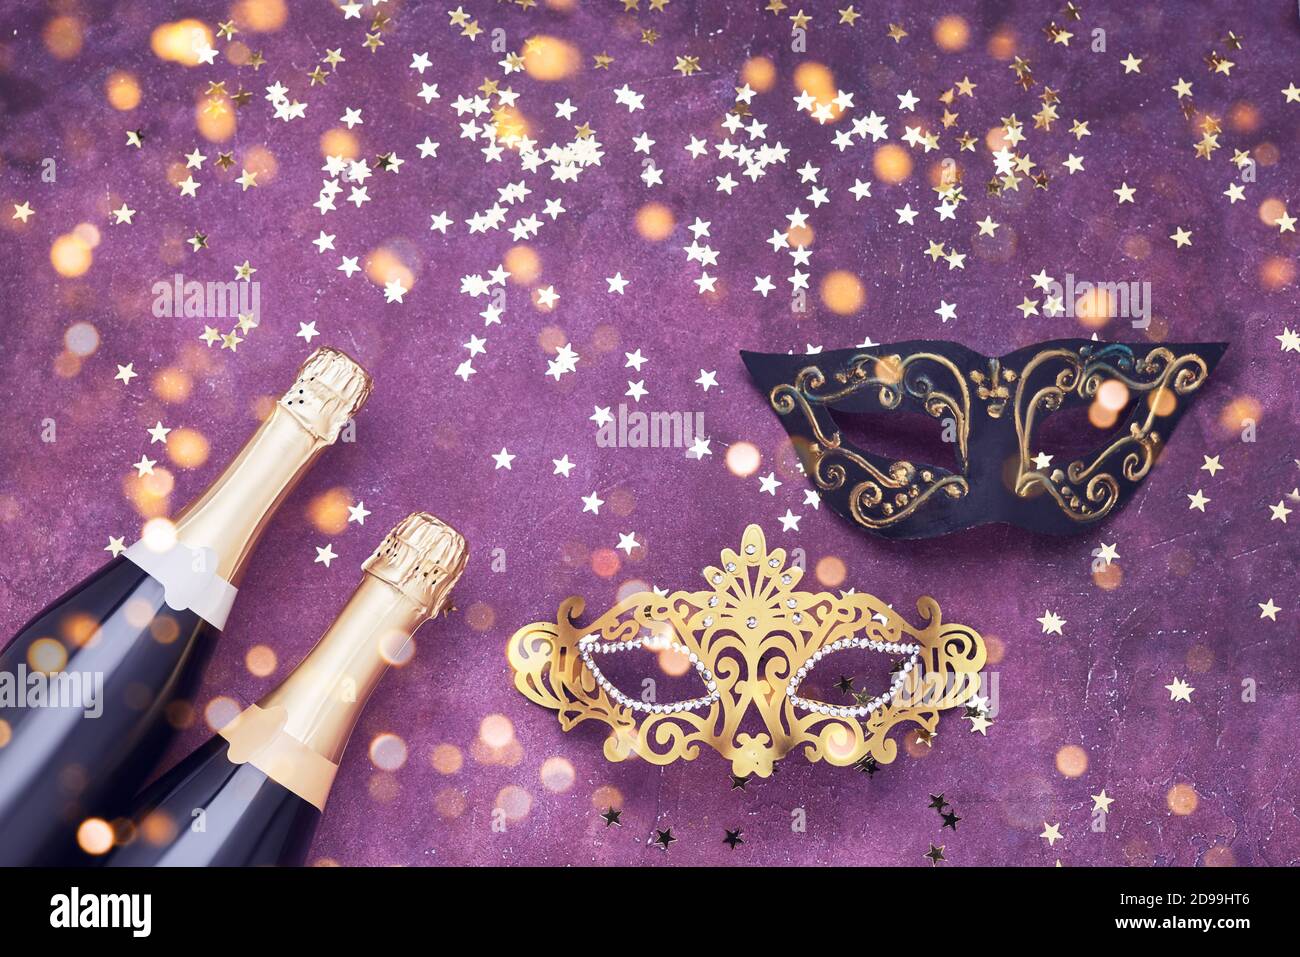 Zwei Champagnerflaschen, goldene und schwarze Karnevalsmaske und Konfetti-Sterne auf violettem Hintergrund. Flaches Lay von Weihnachten, Neujahr, Purim, Karneval Promi Stockfoto